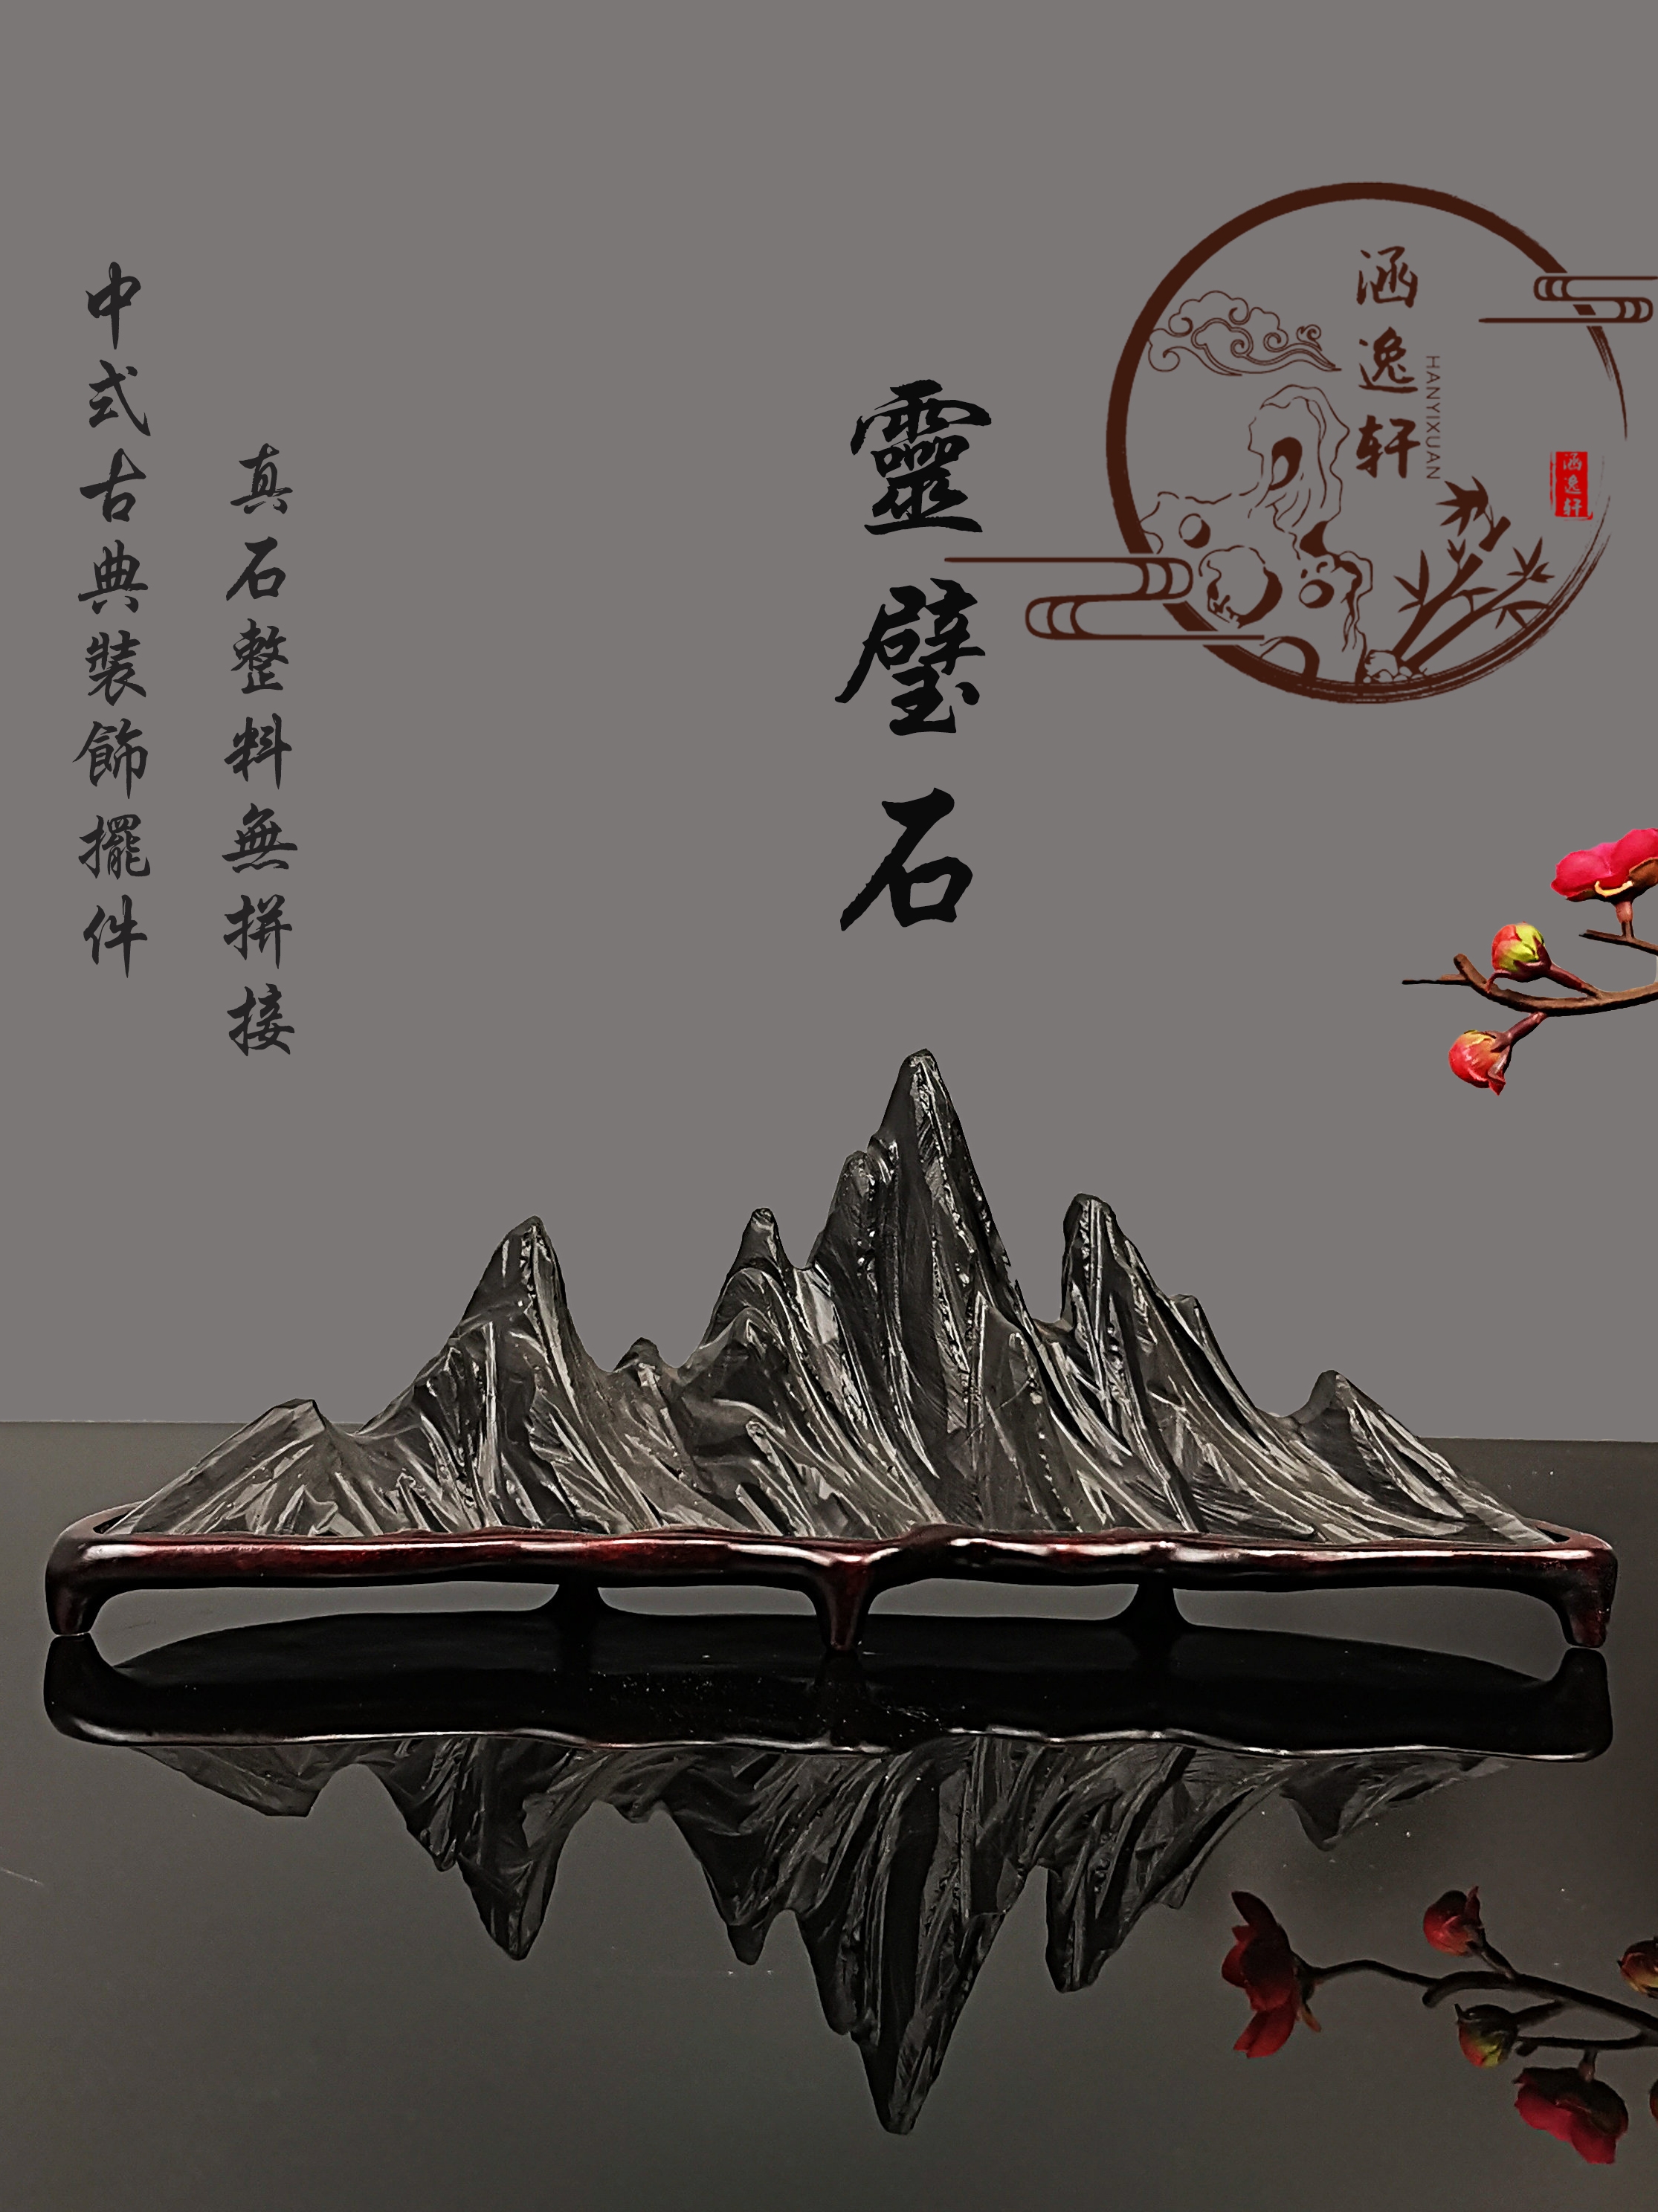 中式灵璧太湖幽兰石笔架山子山型石头风景假靠山家居窗台装饰摆件